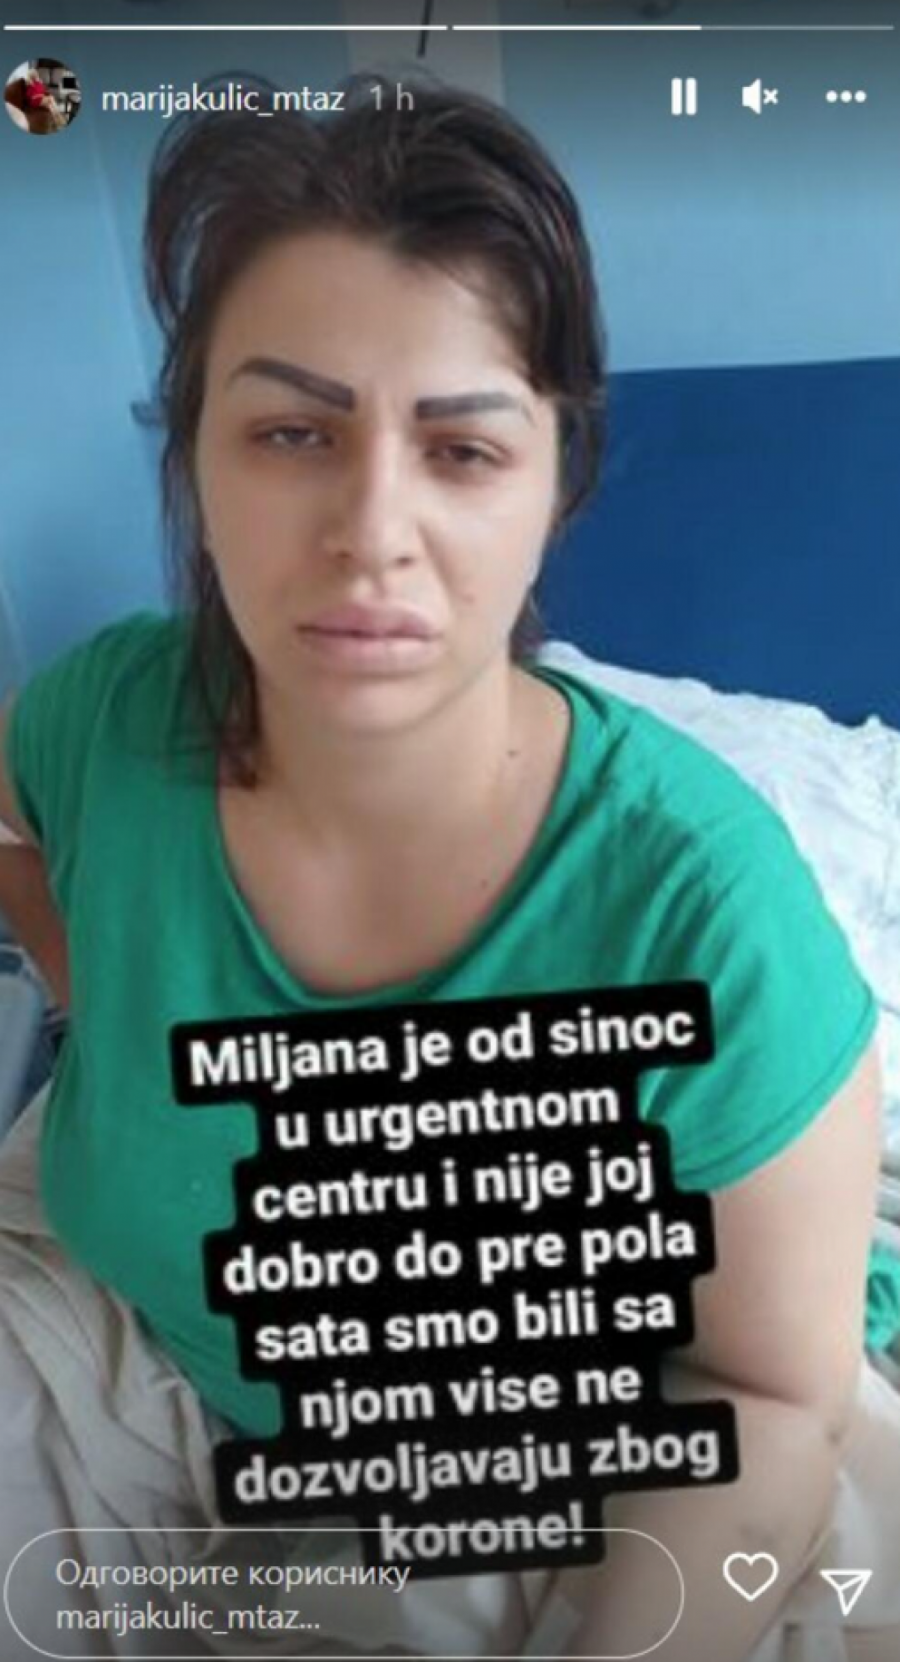 IMAM OŽILJAK PREKO CELOG STOMAKA, STRAŠNO JE ŠTA SU MI URADILI! Miljana Kulić se prvi put oglasila